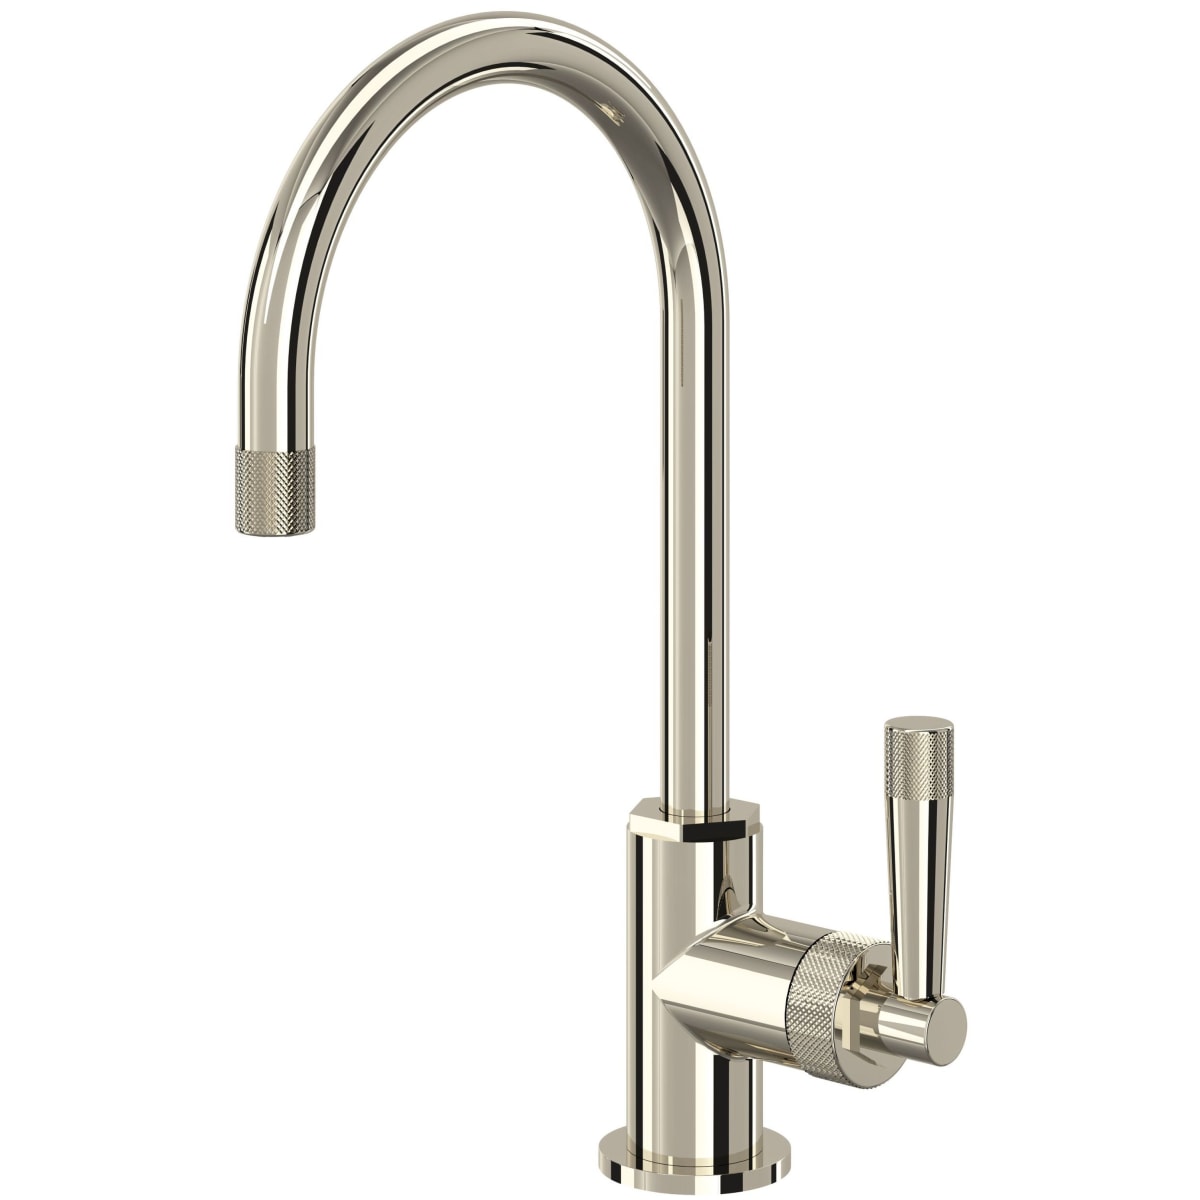 Newport Brass 2008 East Linear Single Handle WaterSense Certified Bar Faucet wit, Polished Nickel - 3